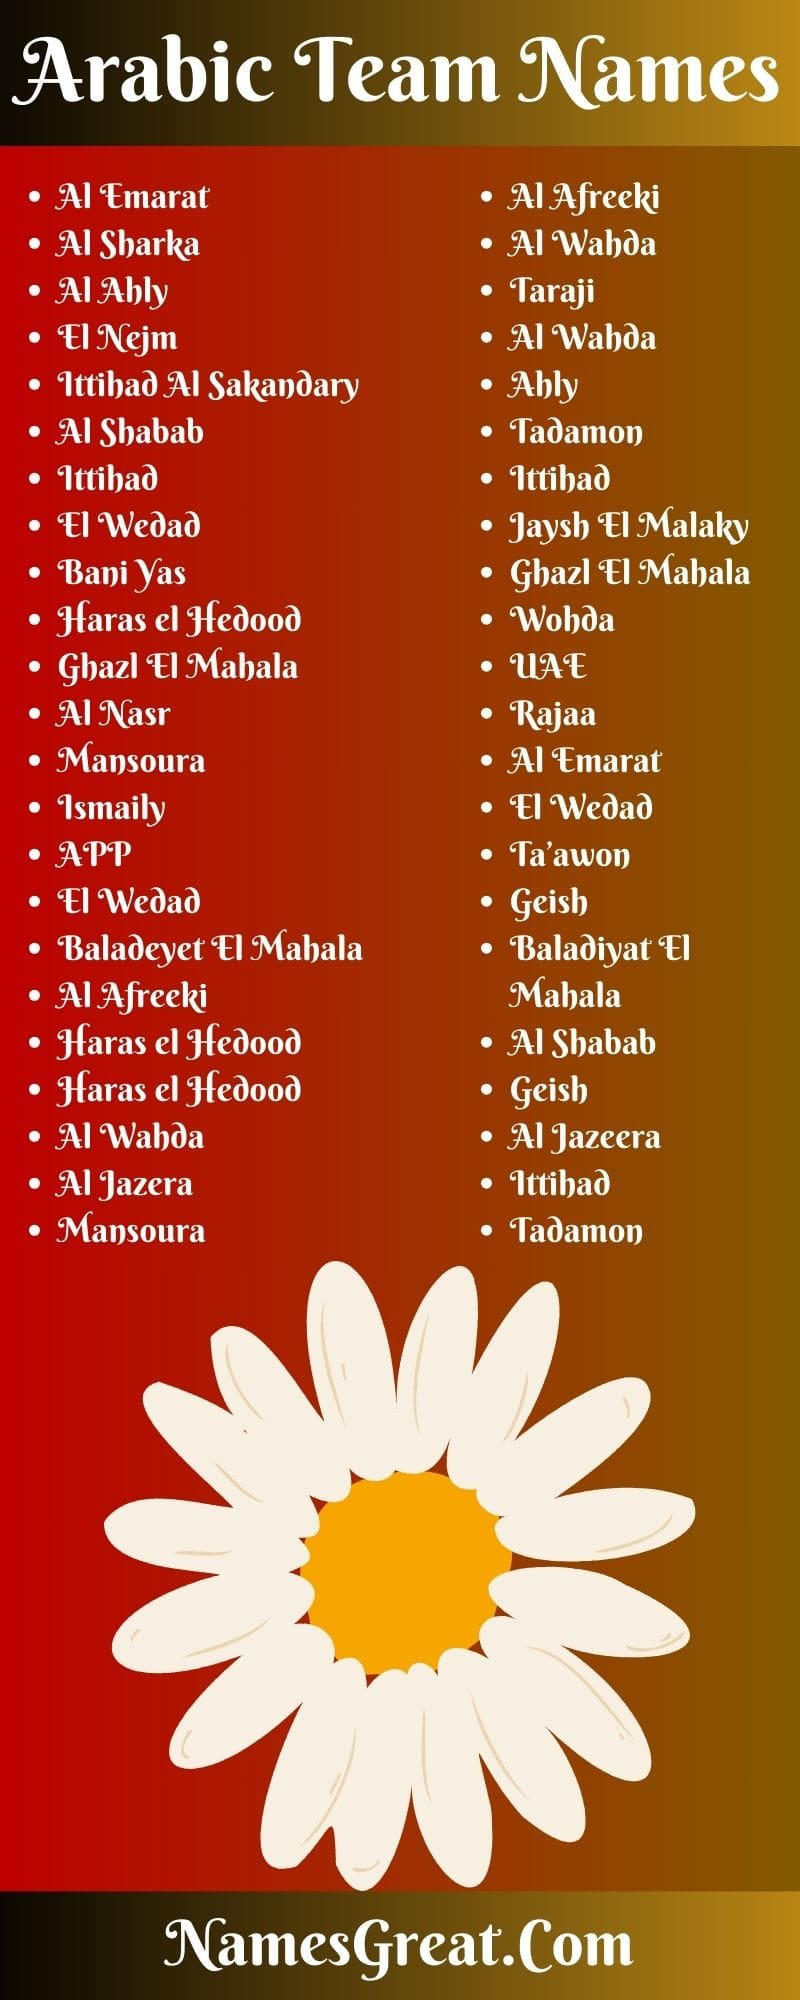 Arabic Team Names